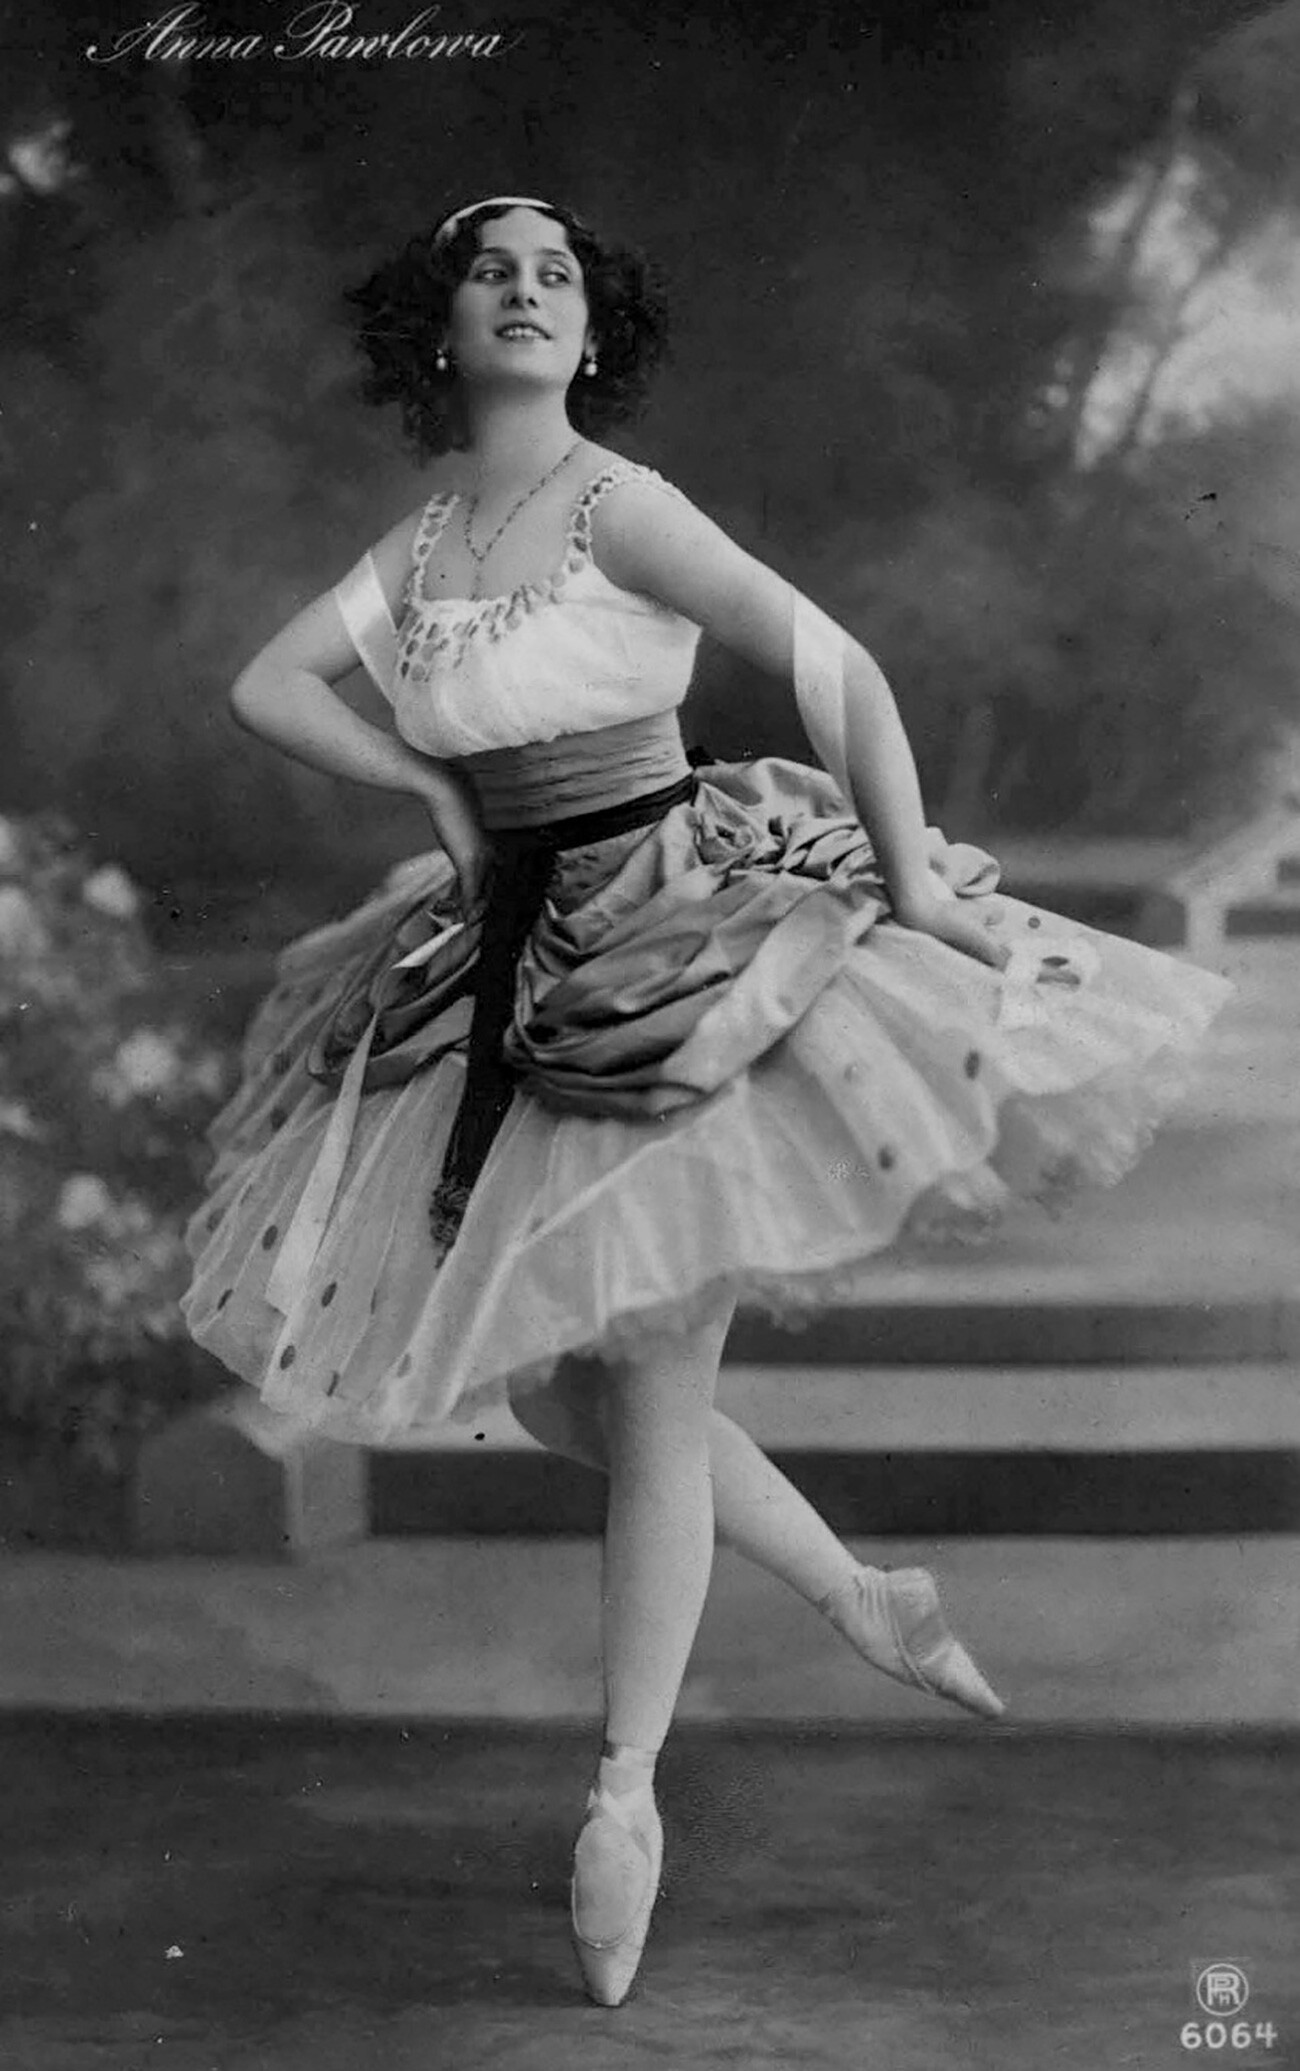 Ballerina Anna Pavlova in 1912